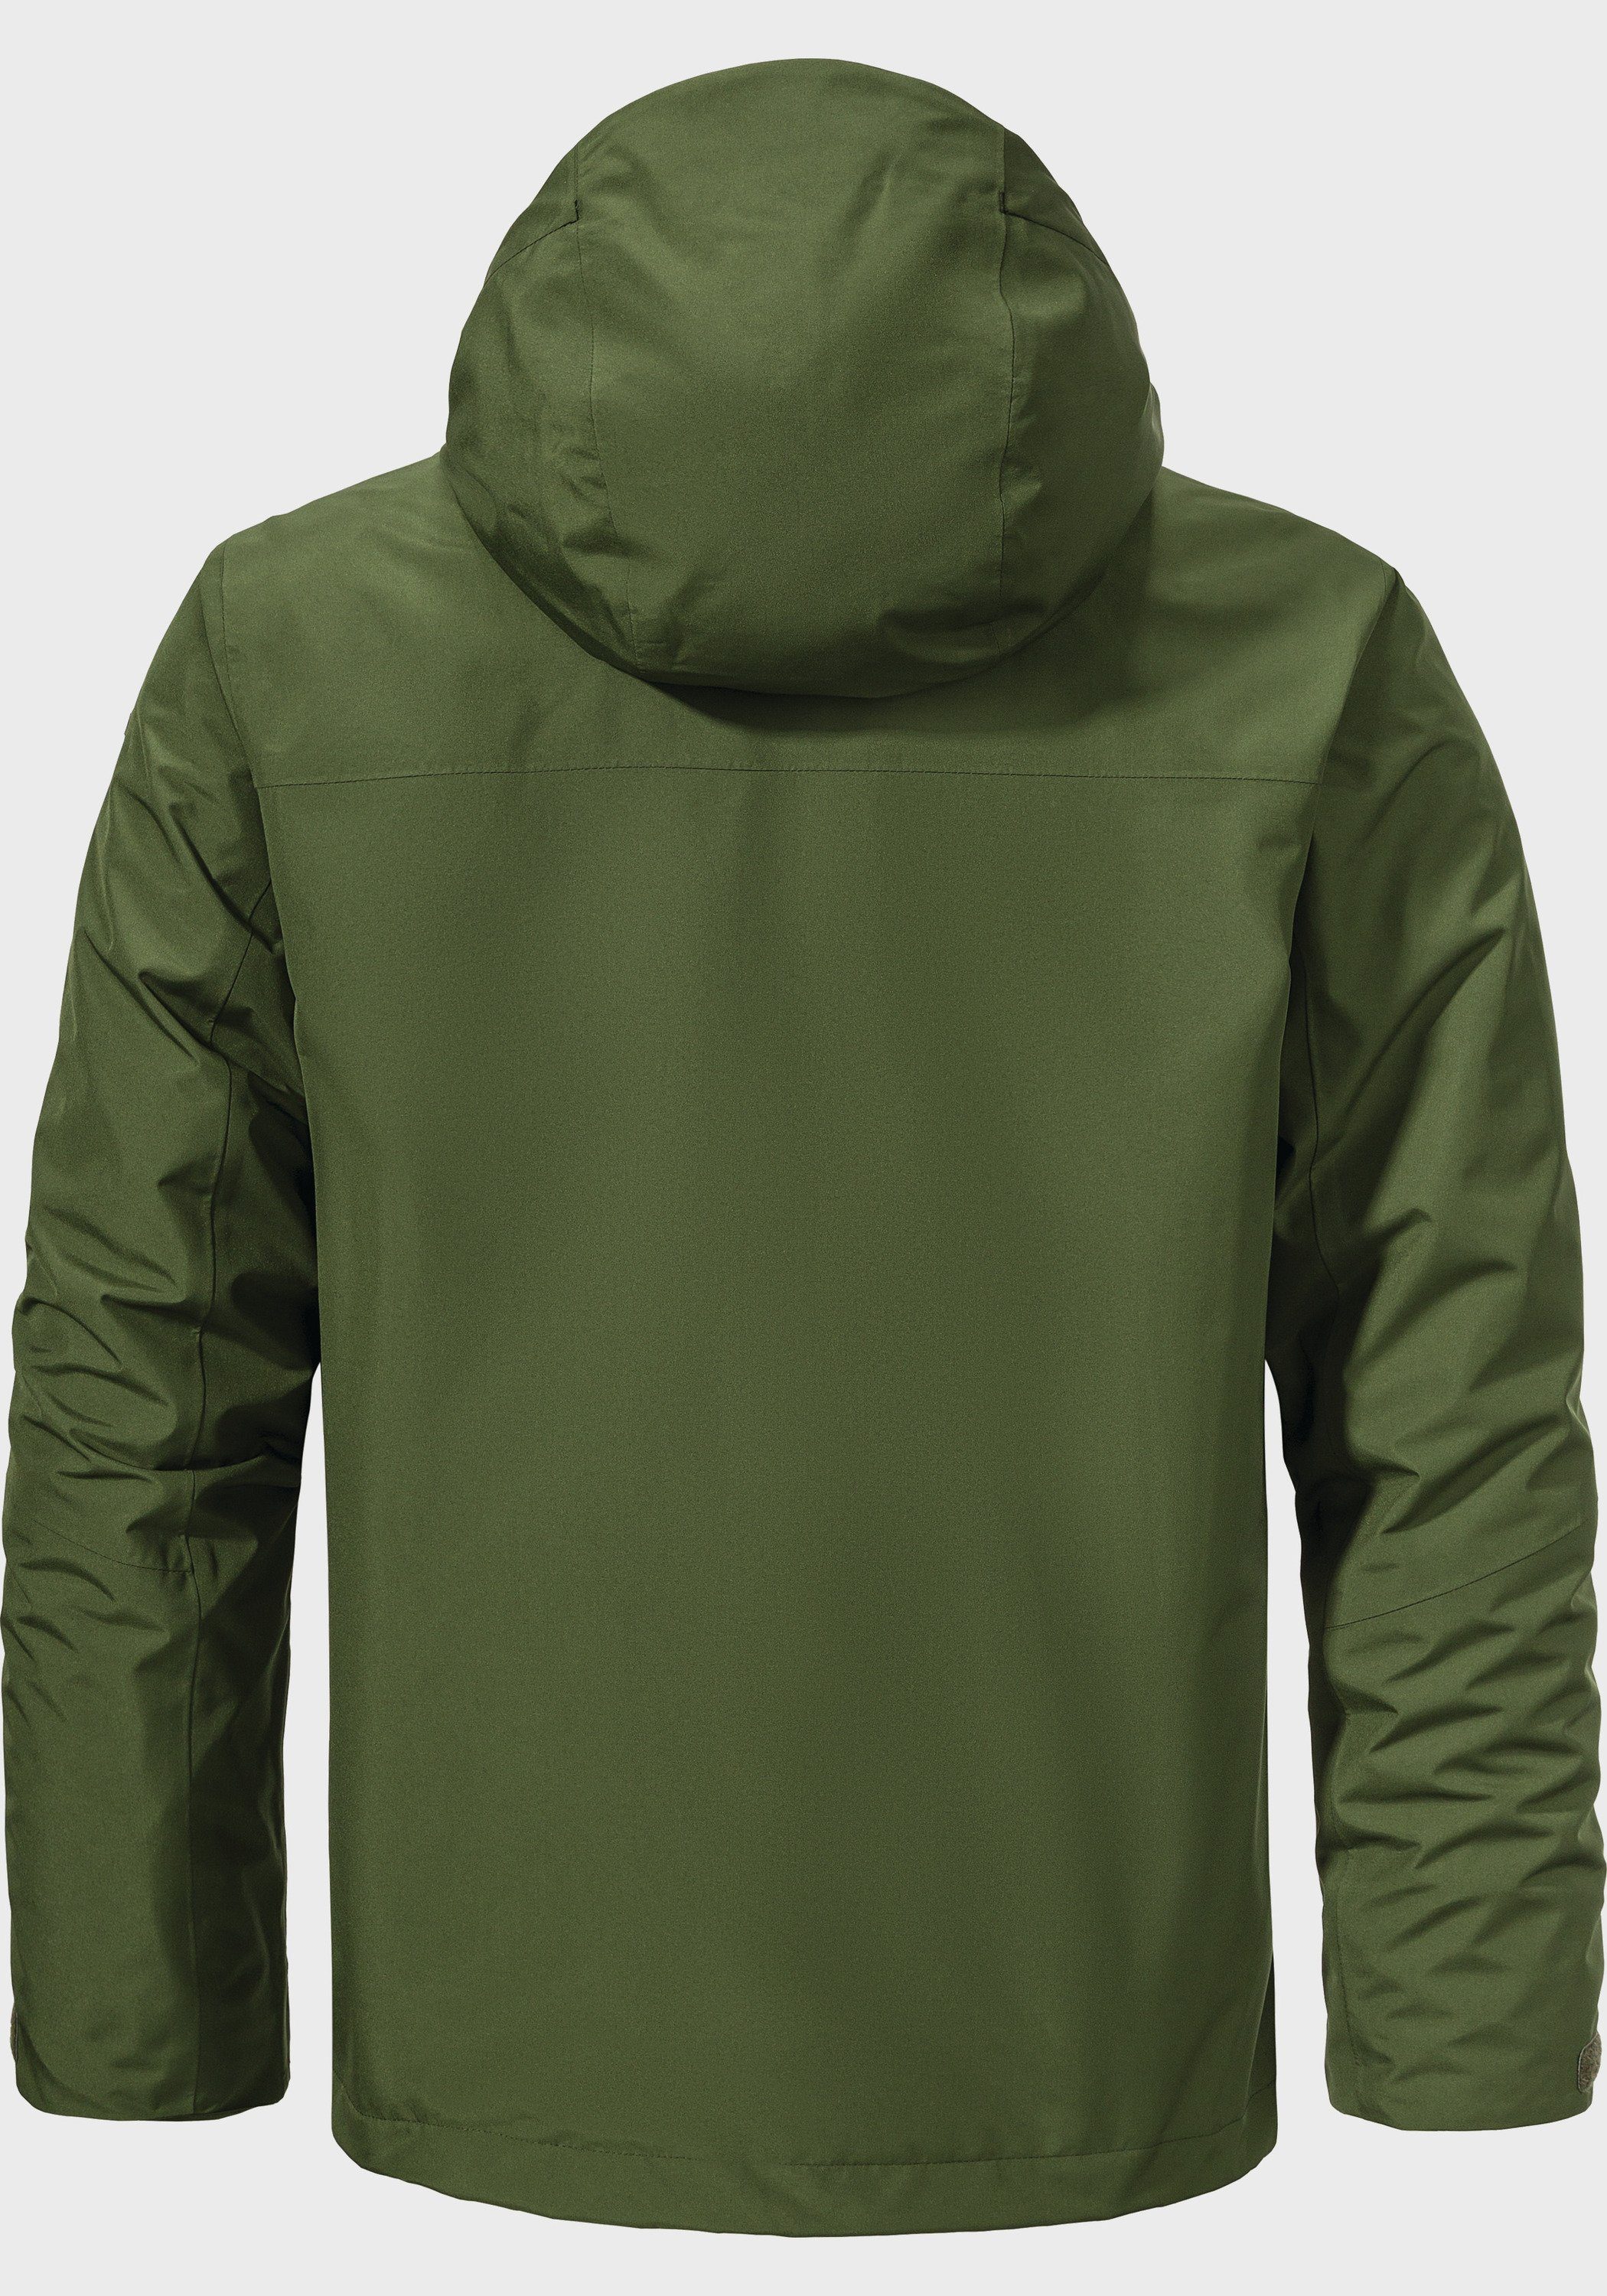 M grün Jacket Partinello Doppeljacke 3in1 Schöffel